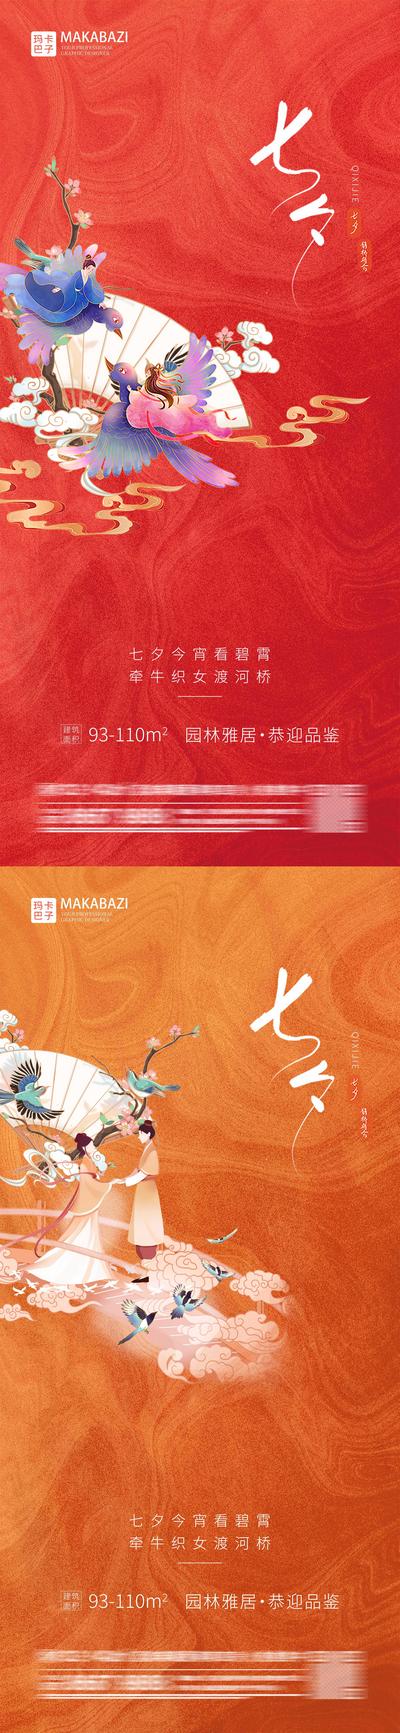 南门网 海报 地产 中国传统节日 七夕 情人节 插画 情侣 古风 喜鹊 扇子 系列